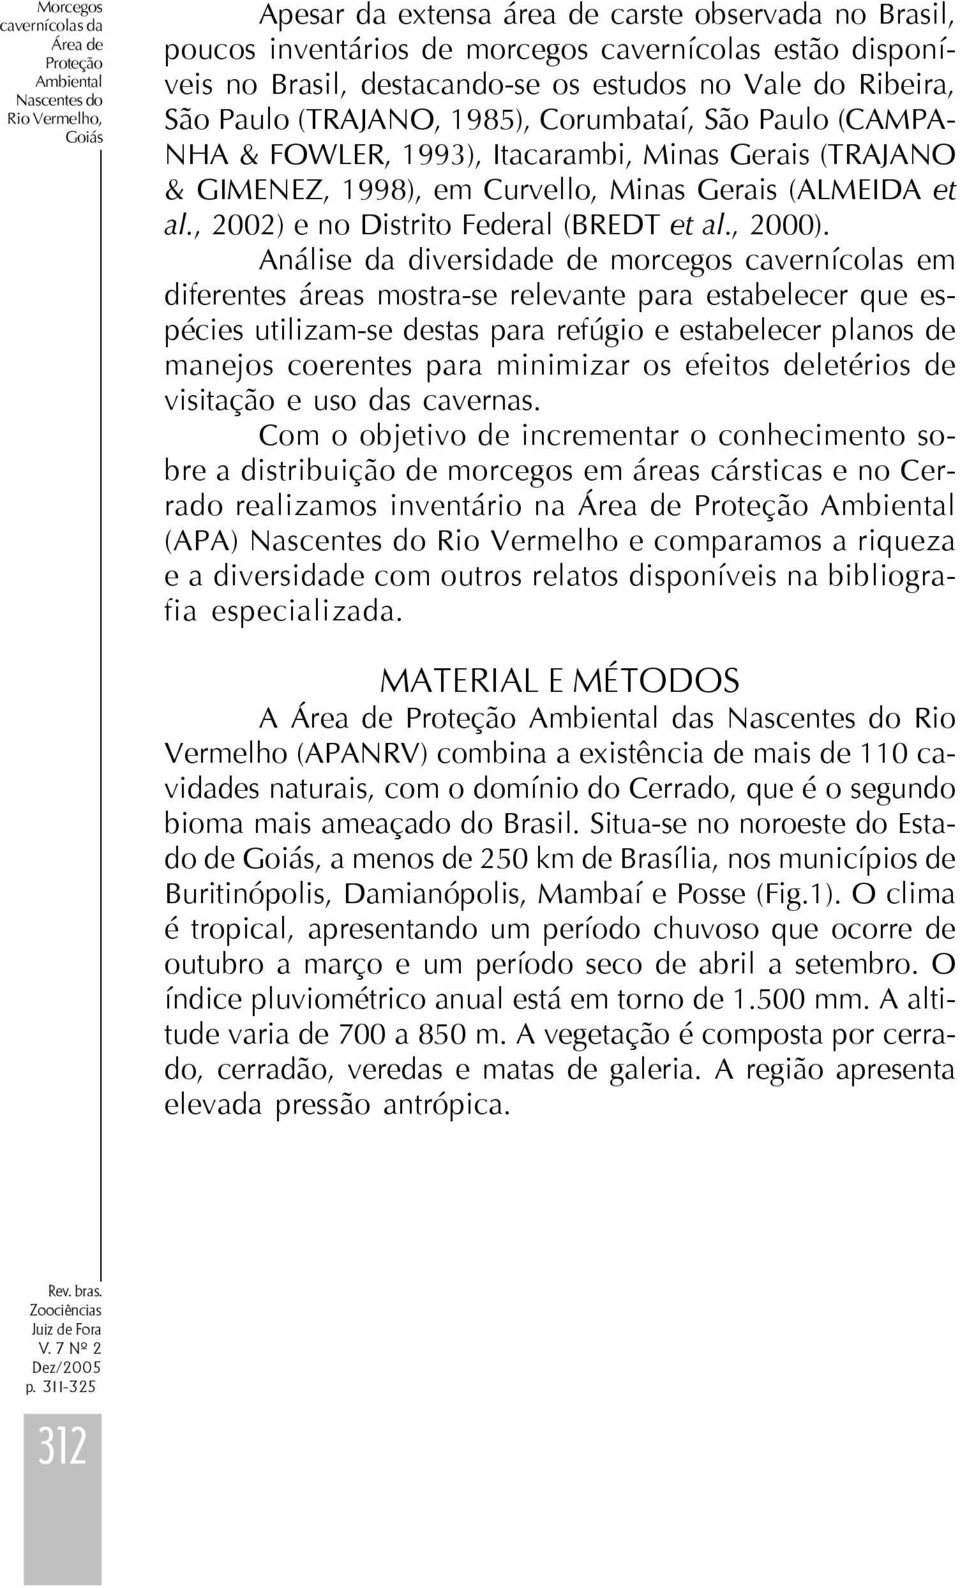 Curvello, Minas Gerais (ALMEIDA et al., ) 